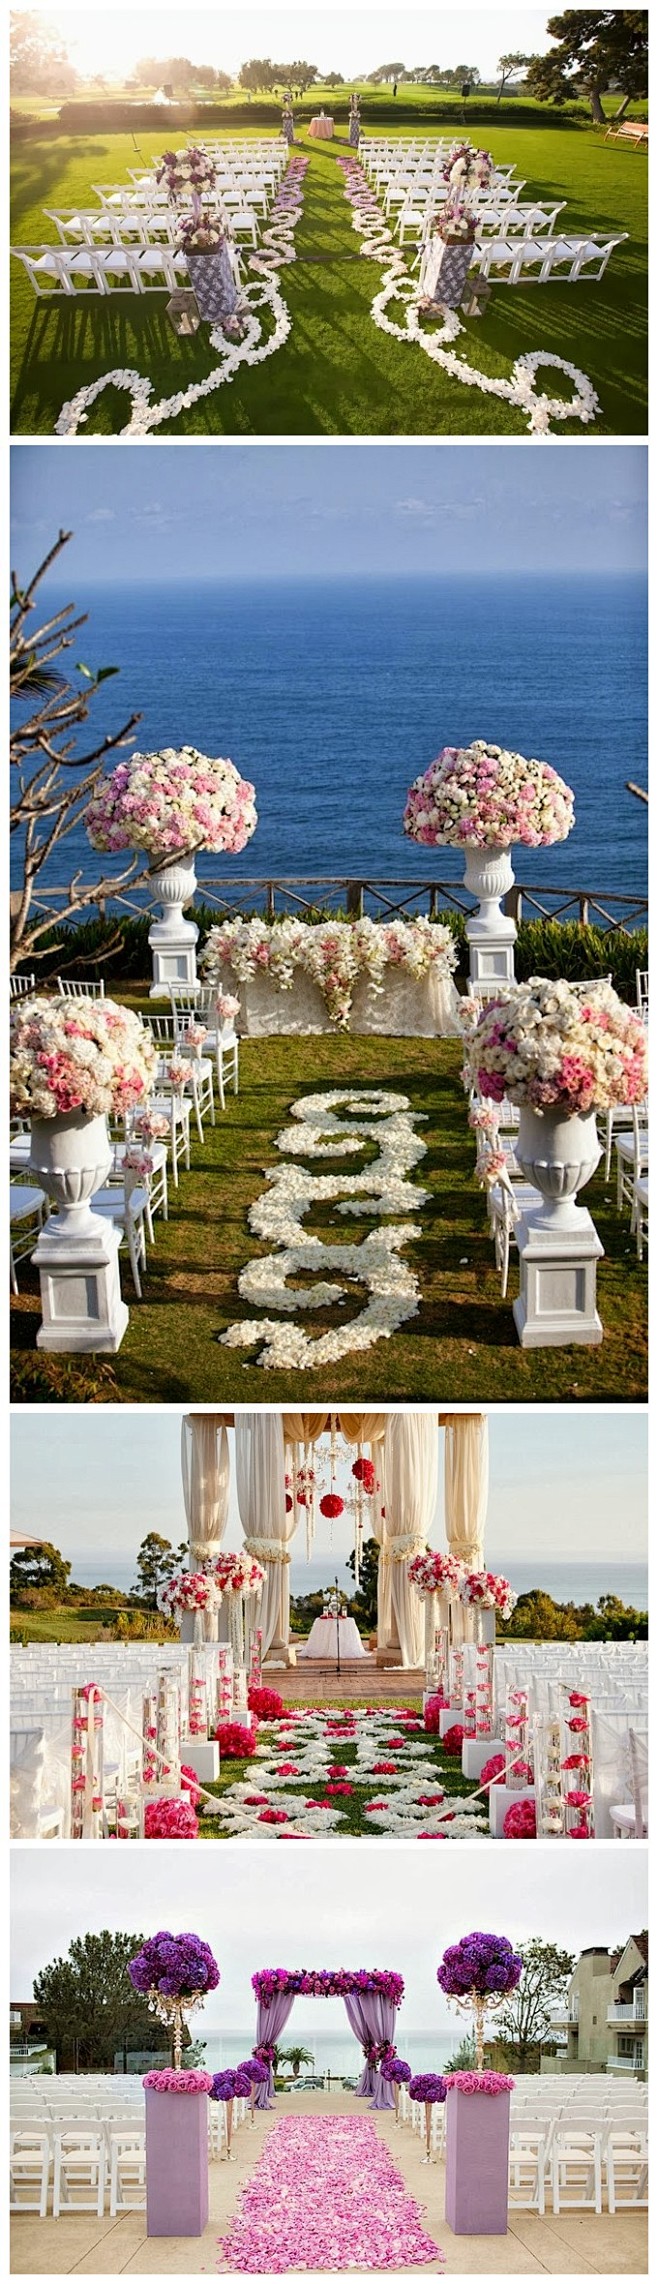 不同色系花瓣装饰的户外婚礼仪式场地布置